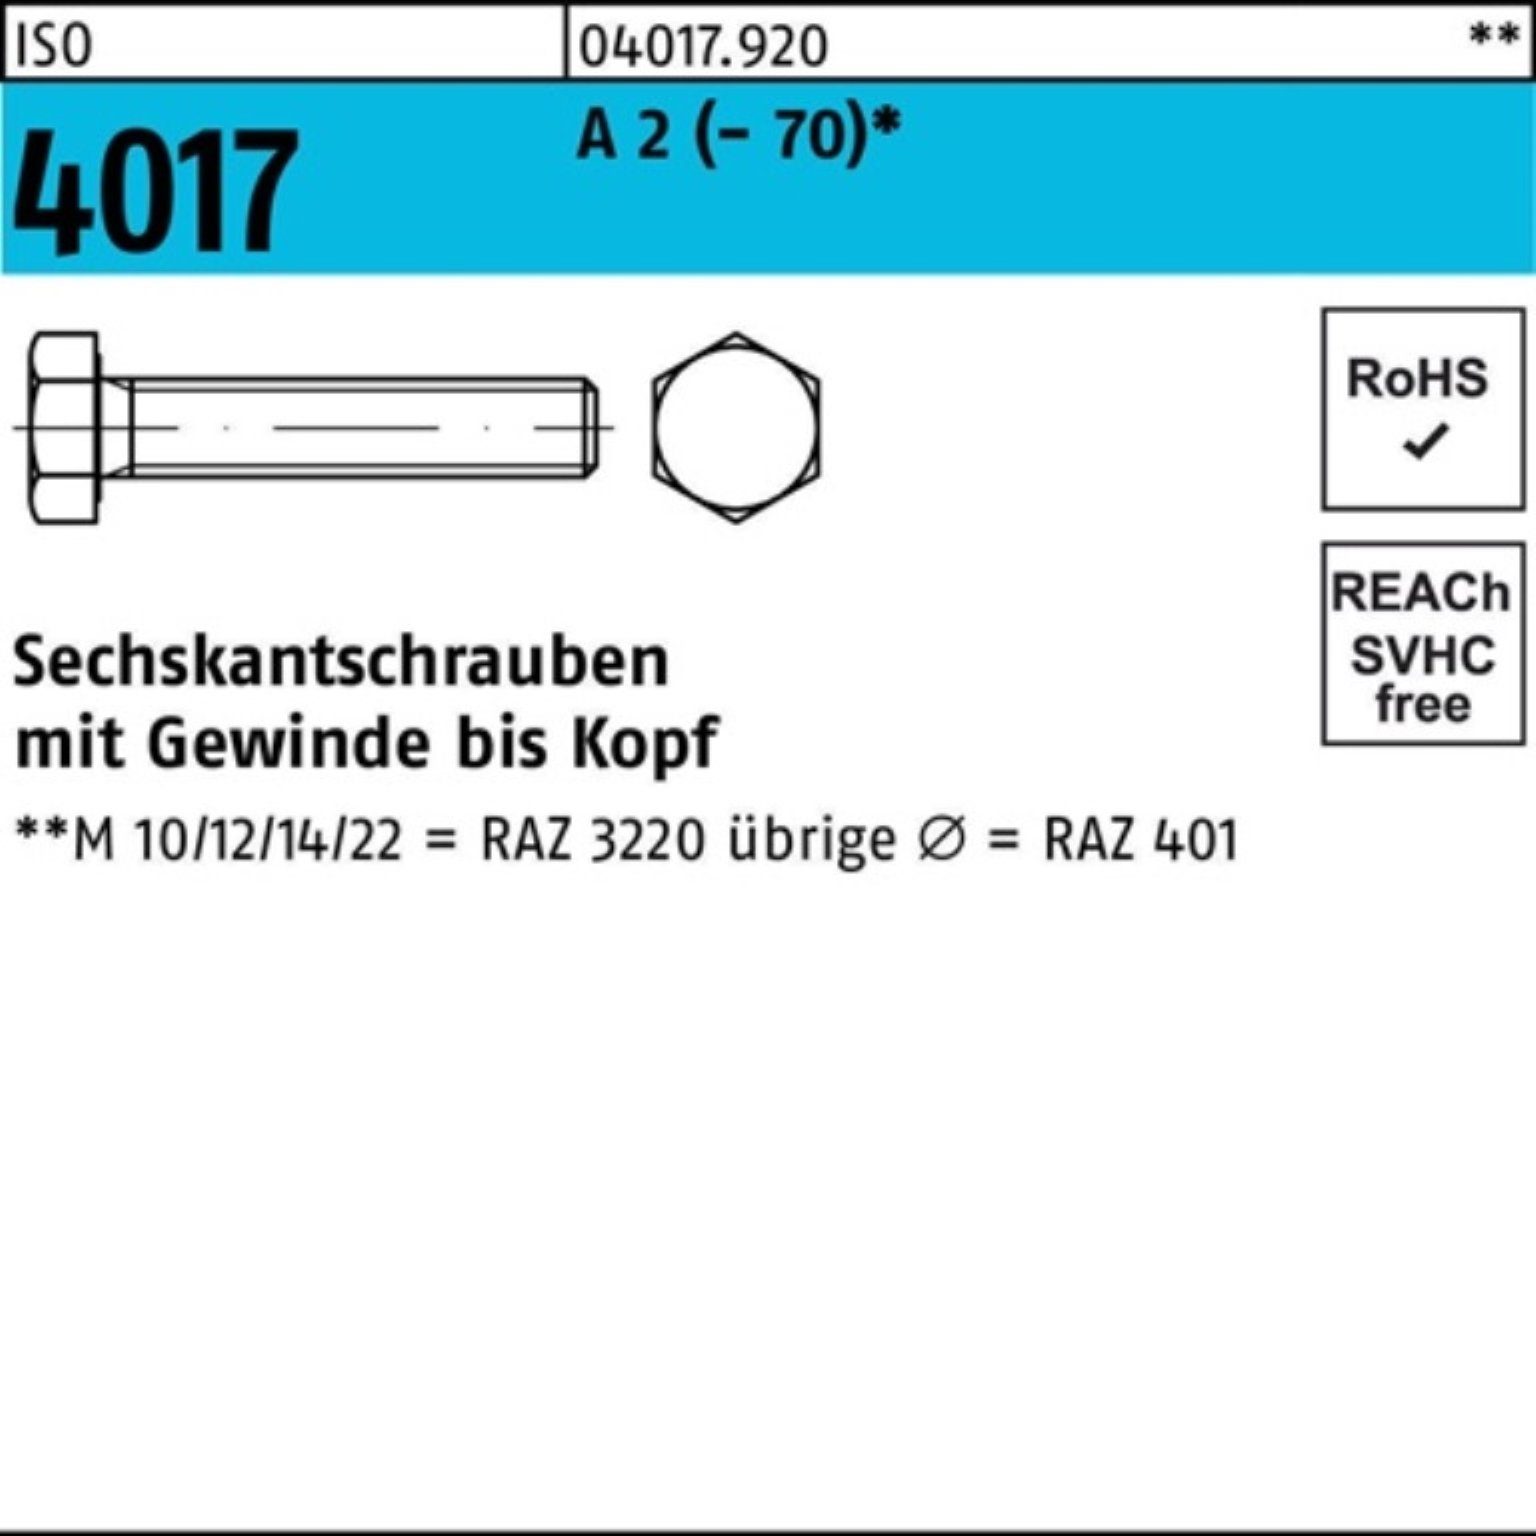 Bufab Sechskantschraube 100er Pack Sechskantschraube ISO 4017 VG M36x 90 A 2 (70) 1 Stück I